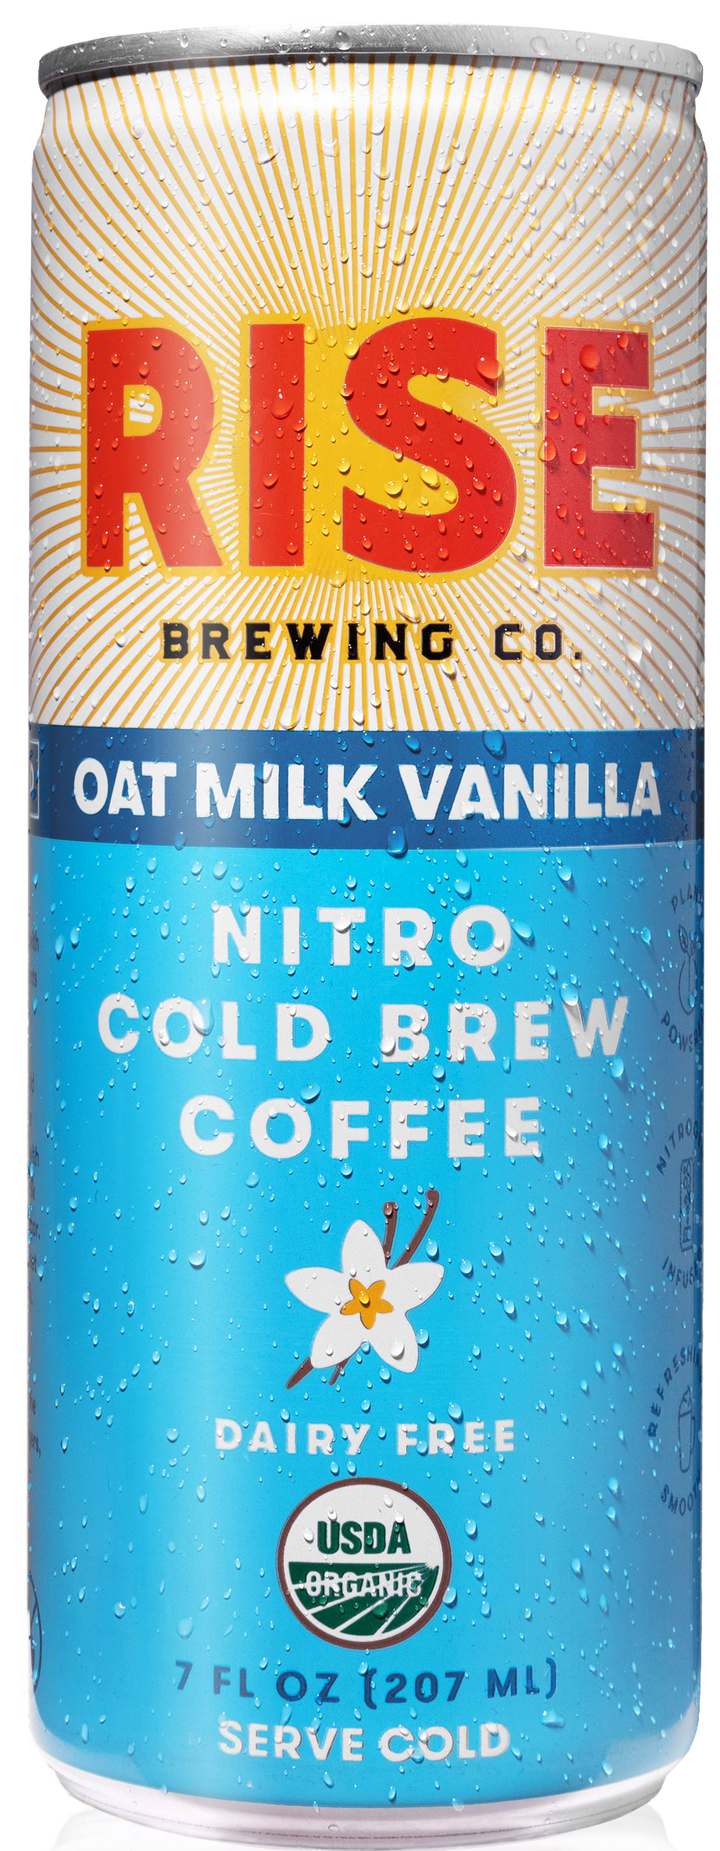 Rise Brewing Co. Vanilla Oat Milk Cold Brew Latte Nitro-7 fl oz.s-12/Case